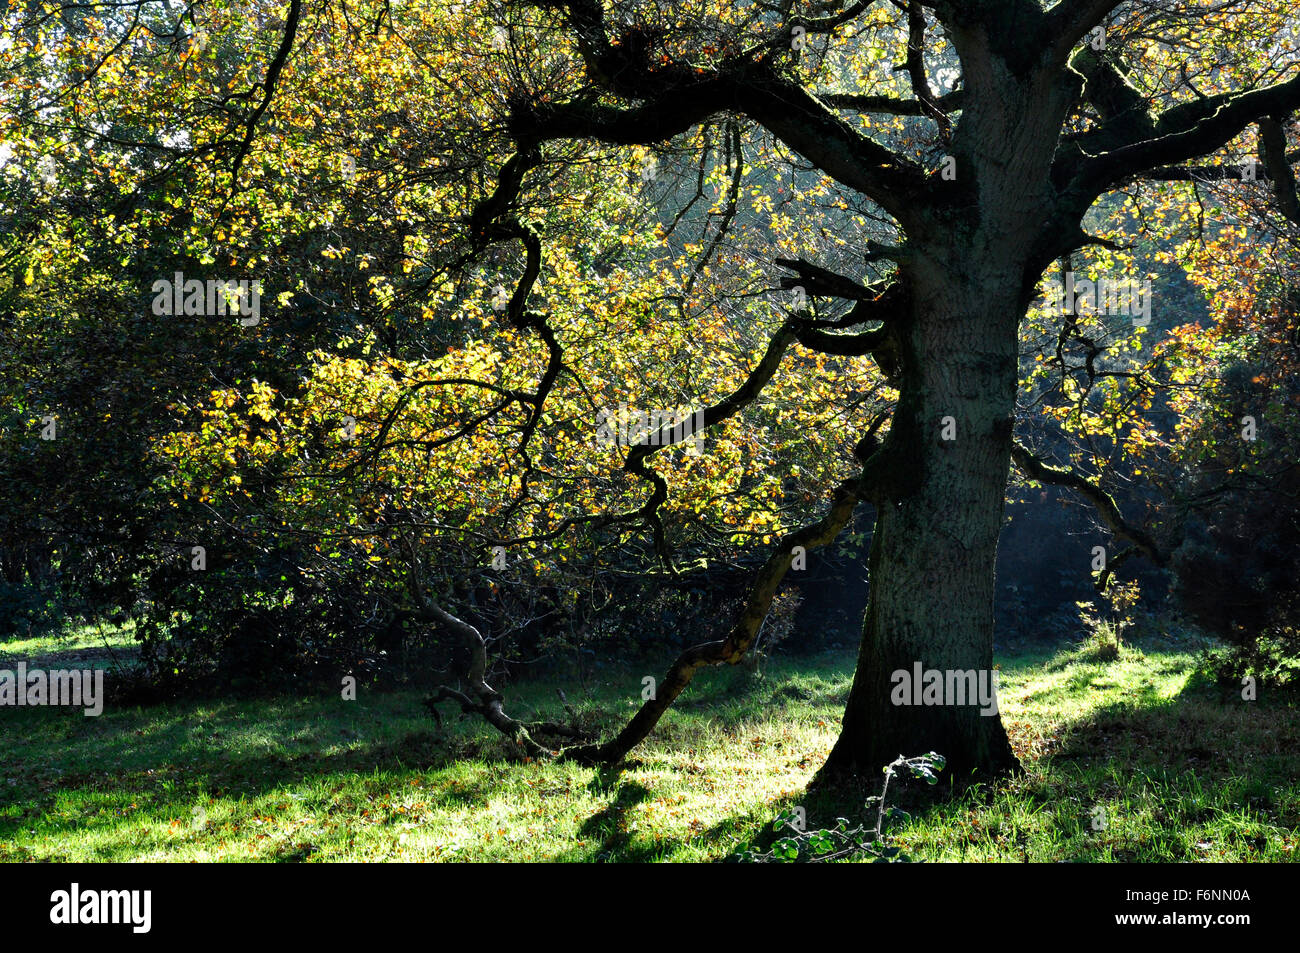 Une clairière dans la forêt - Couleurs d'automne dans un chêne canopy - tourné contre la lumière - la lumière du soleil et les ombres - contraste Banque D'Images